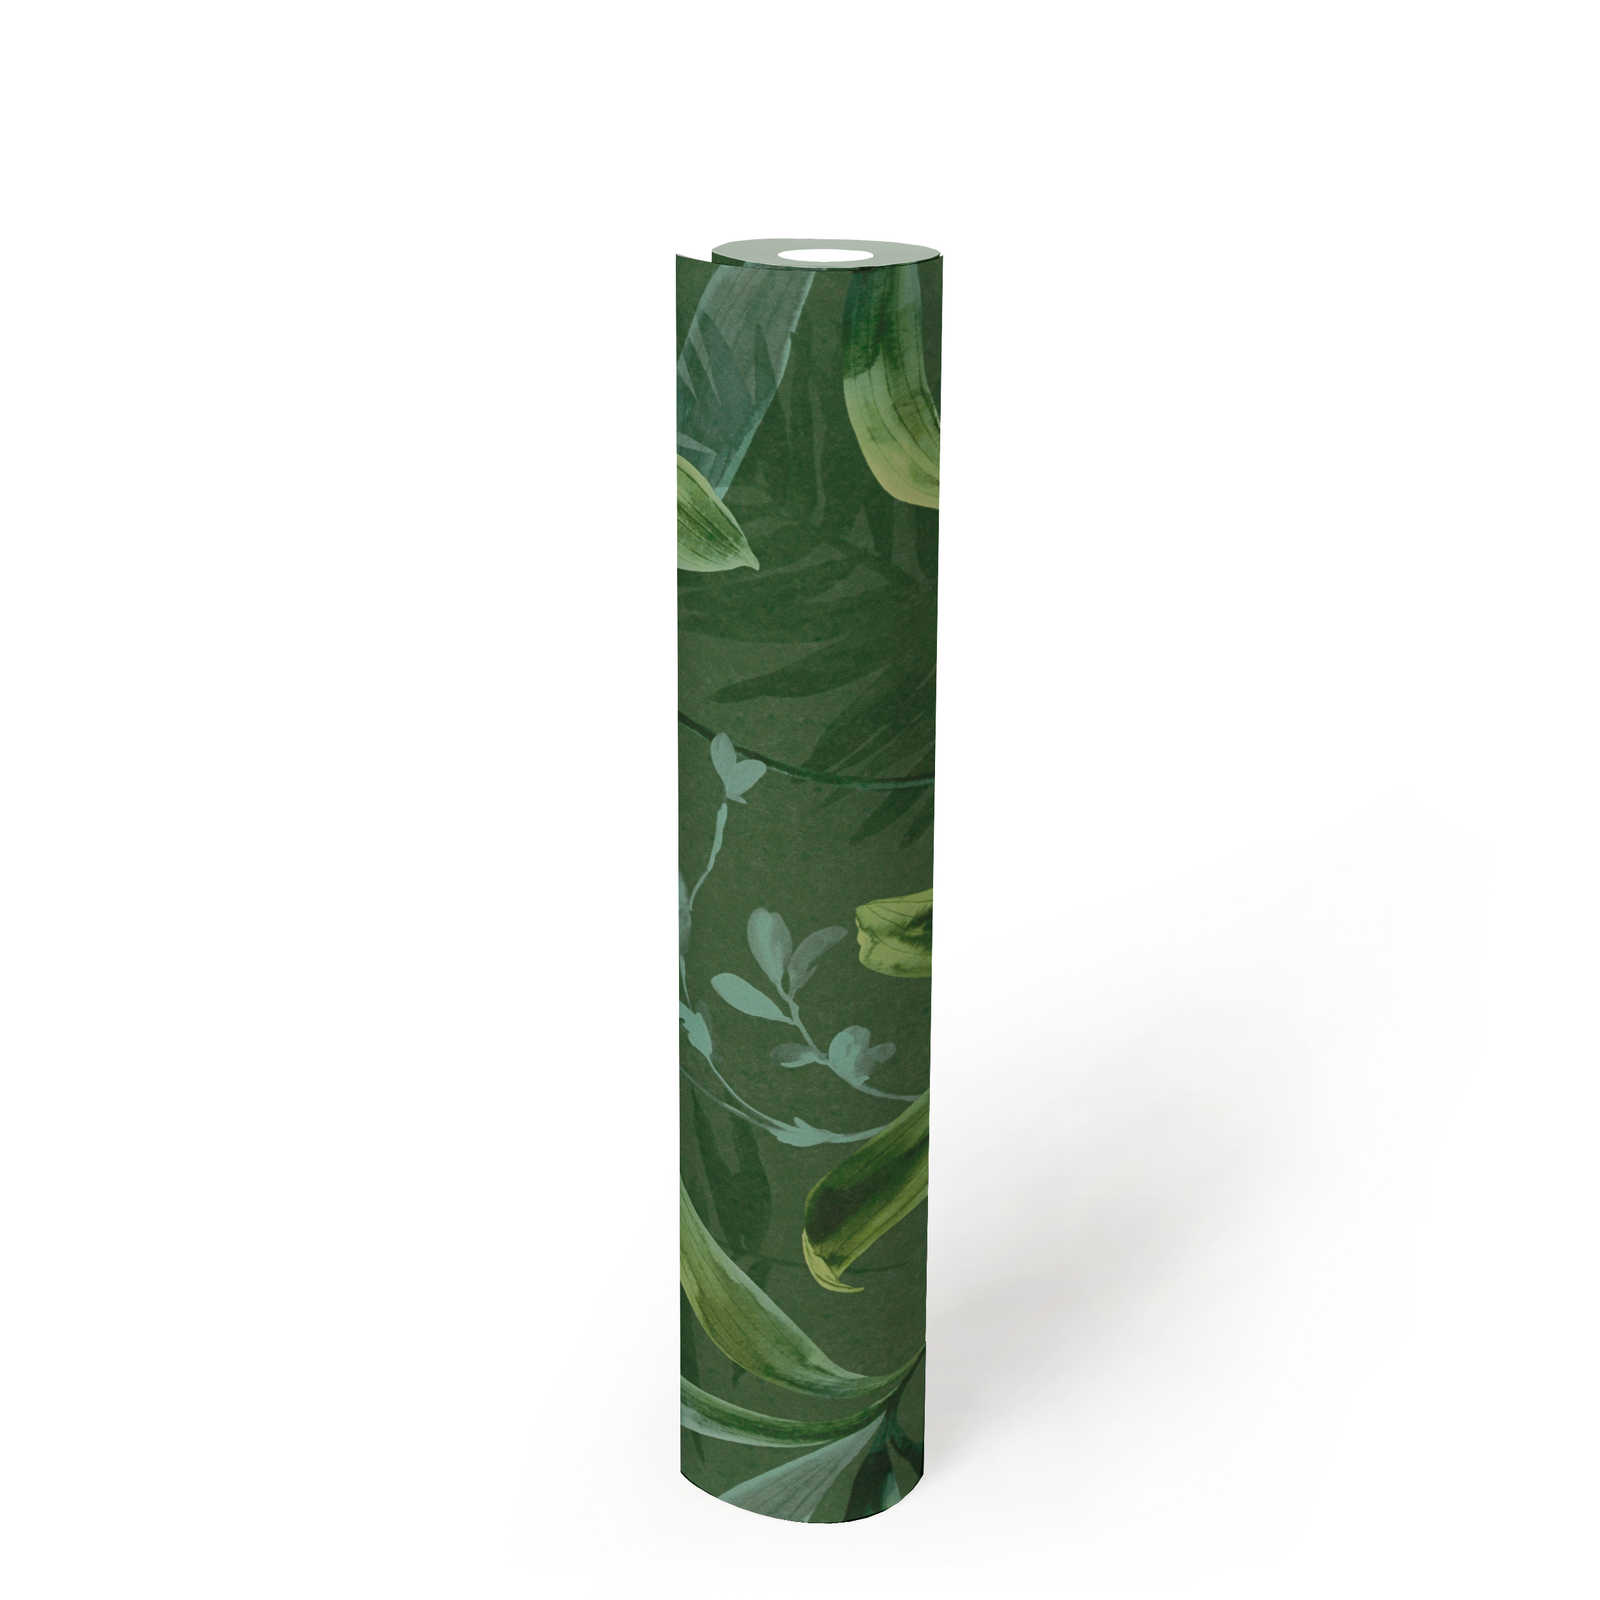             Carta da parati in tessuto non tessuto con motivo di foglie verdi in stile acquerello - verde
        